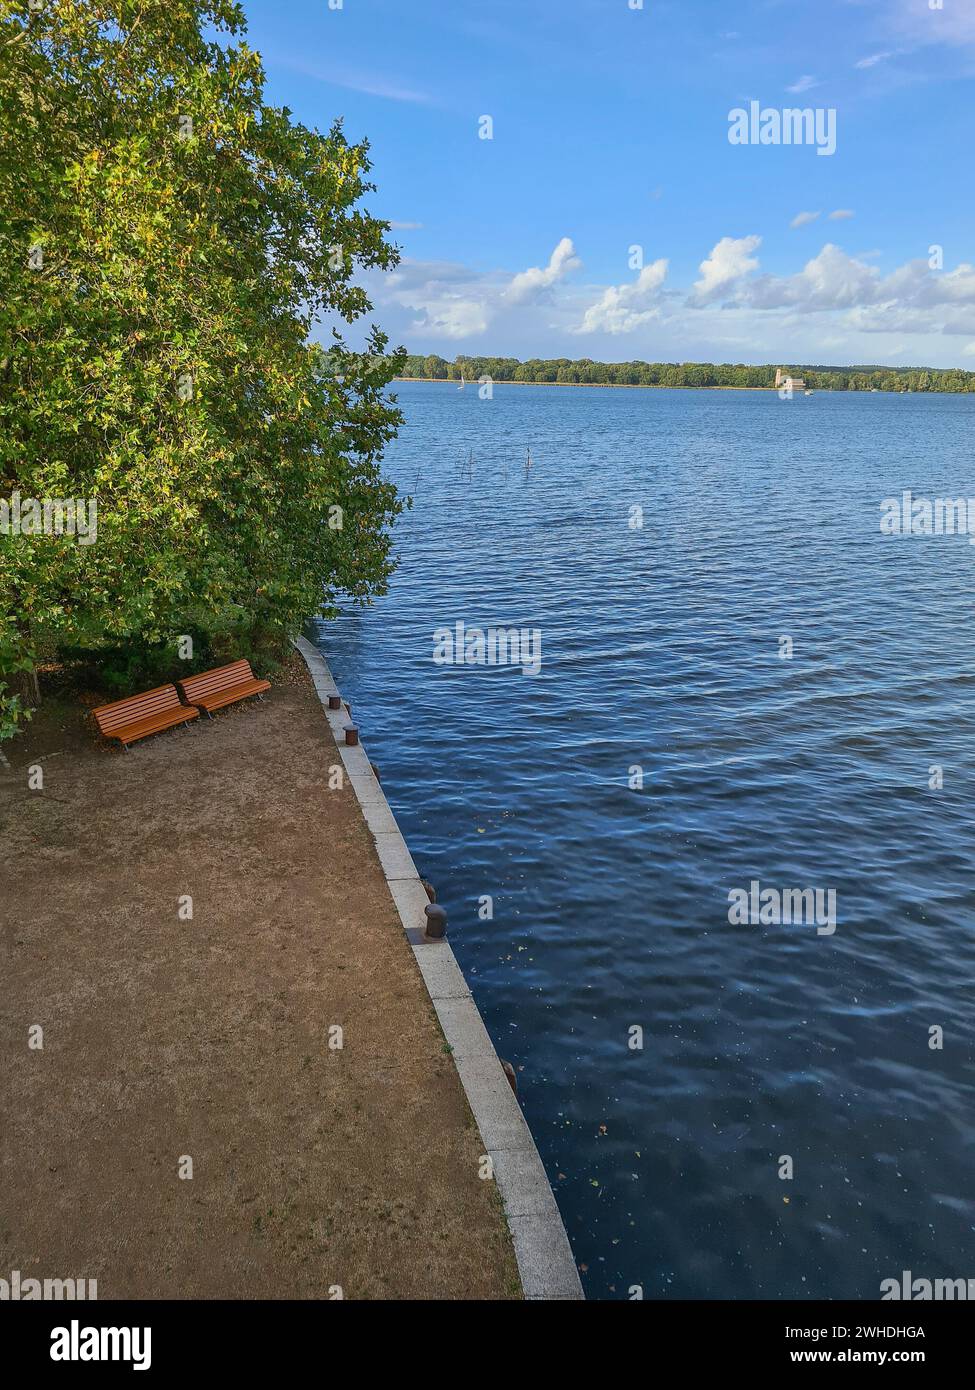 Entspannen Sie am nahe gelegenen See und Wasser mit Blick von oben auf Parkbänken unter einem Baum im Herbst Stockfoto